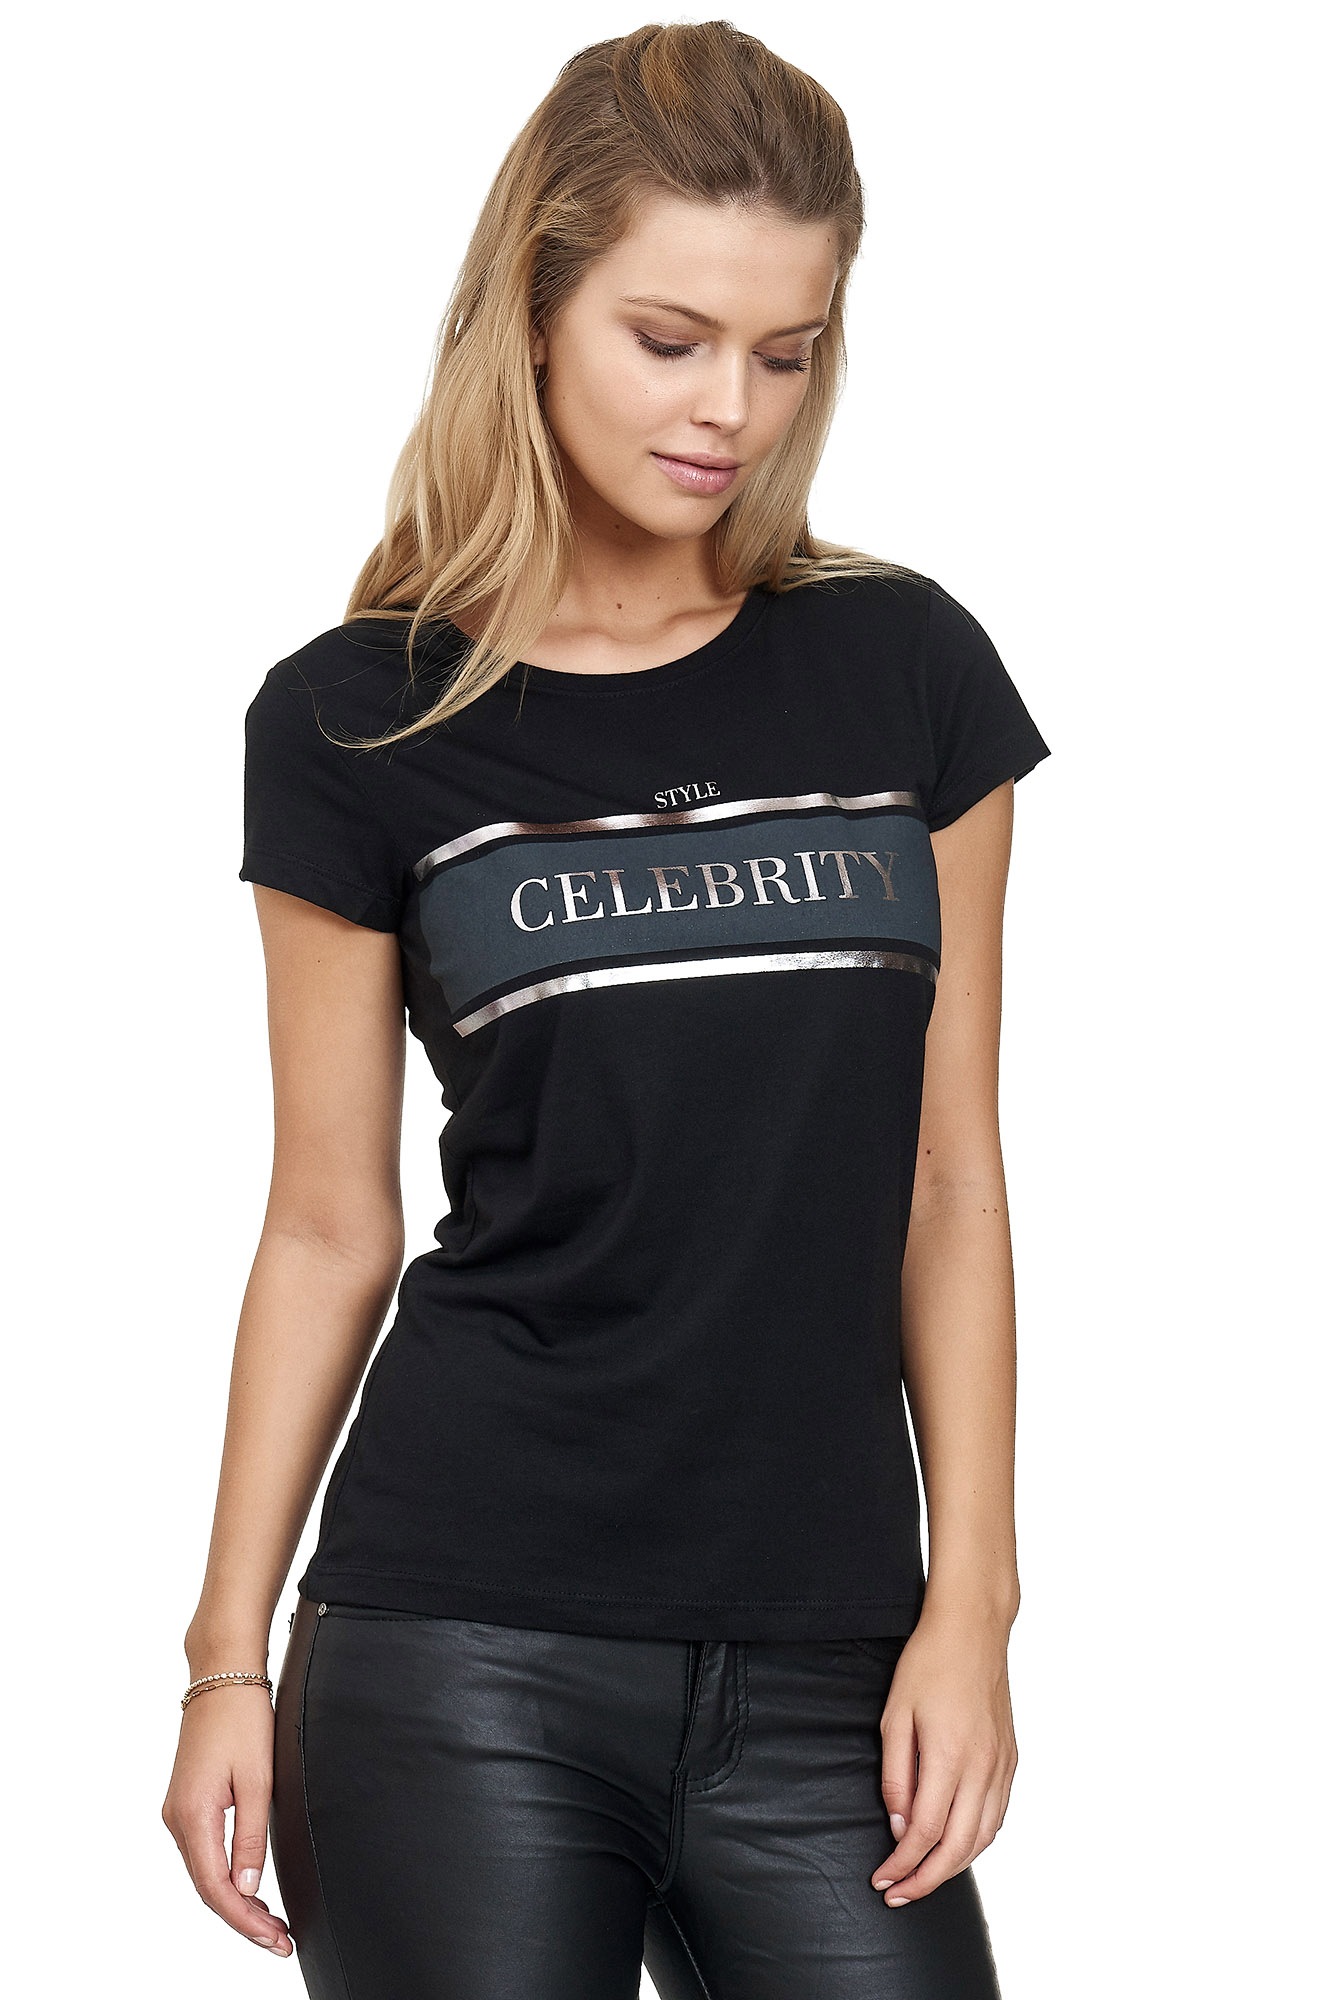 Decay T-Shirt, mit Glanz-Aufdruck shoppen | I'm walking